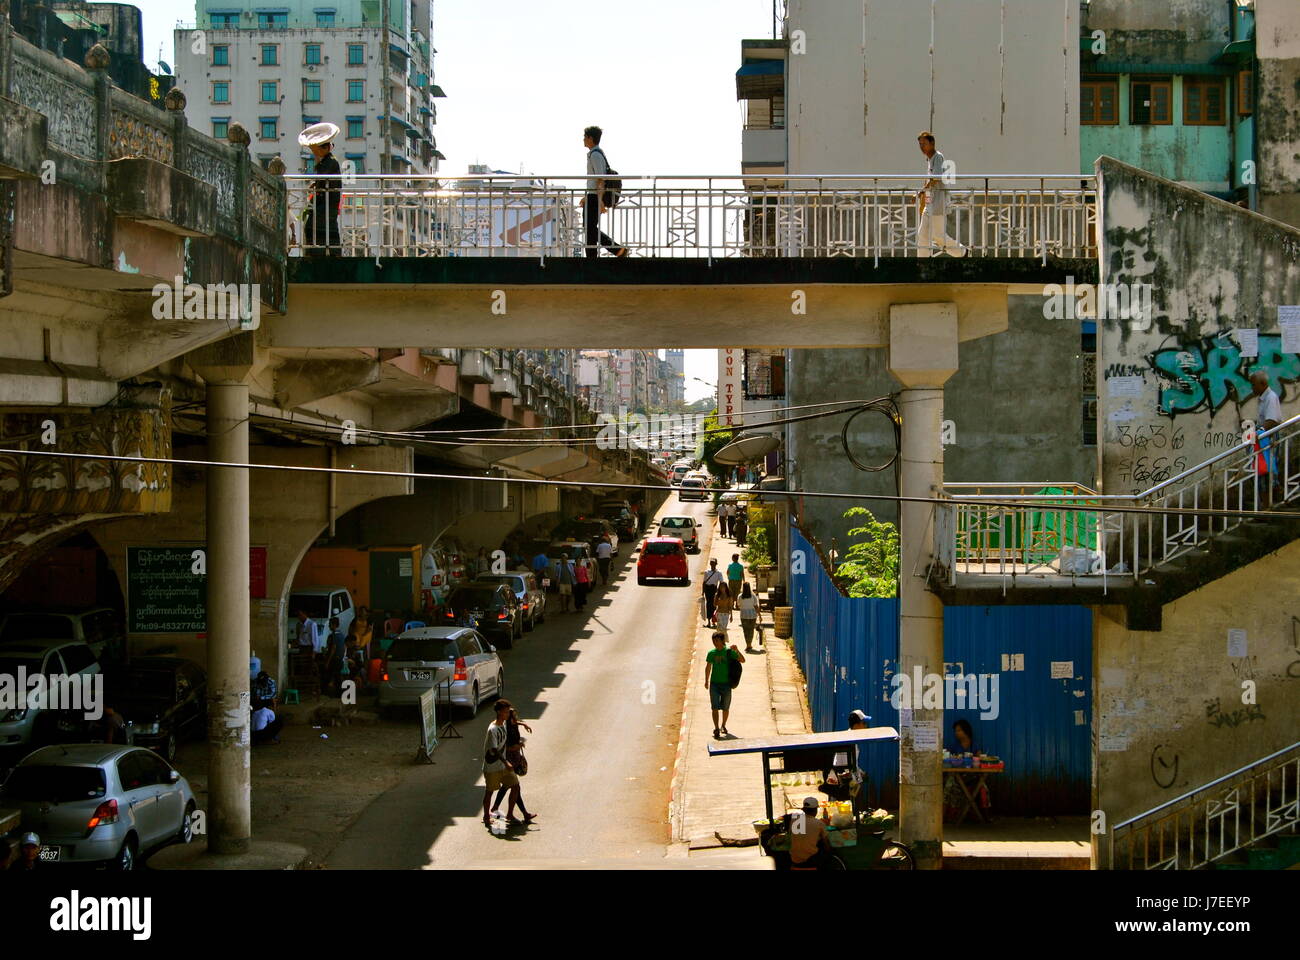 Yangon street scene, Yangon, Myanmar Stock Photo